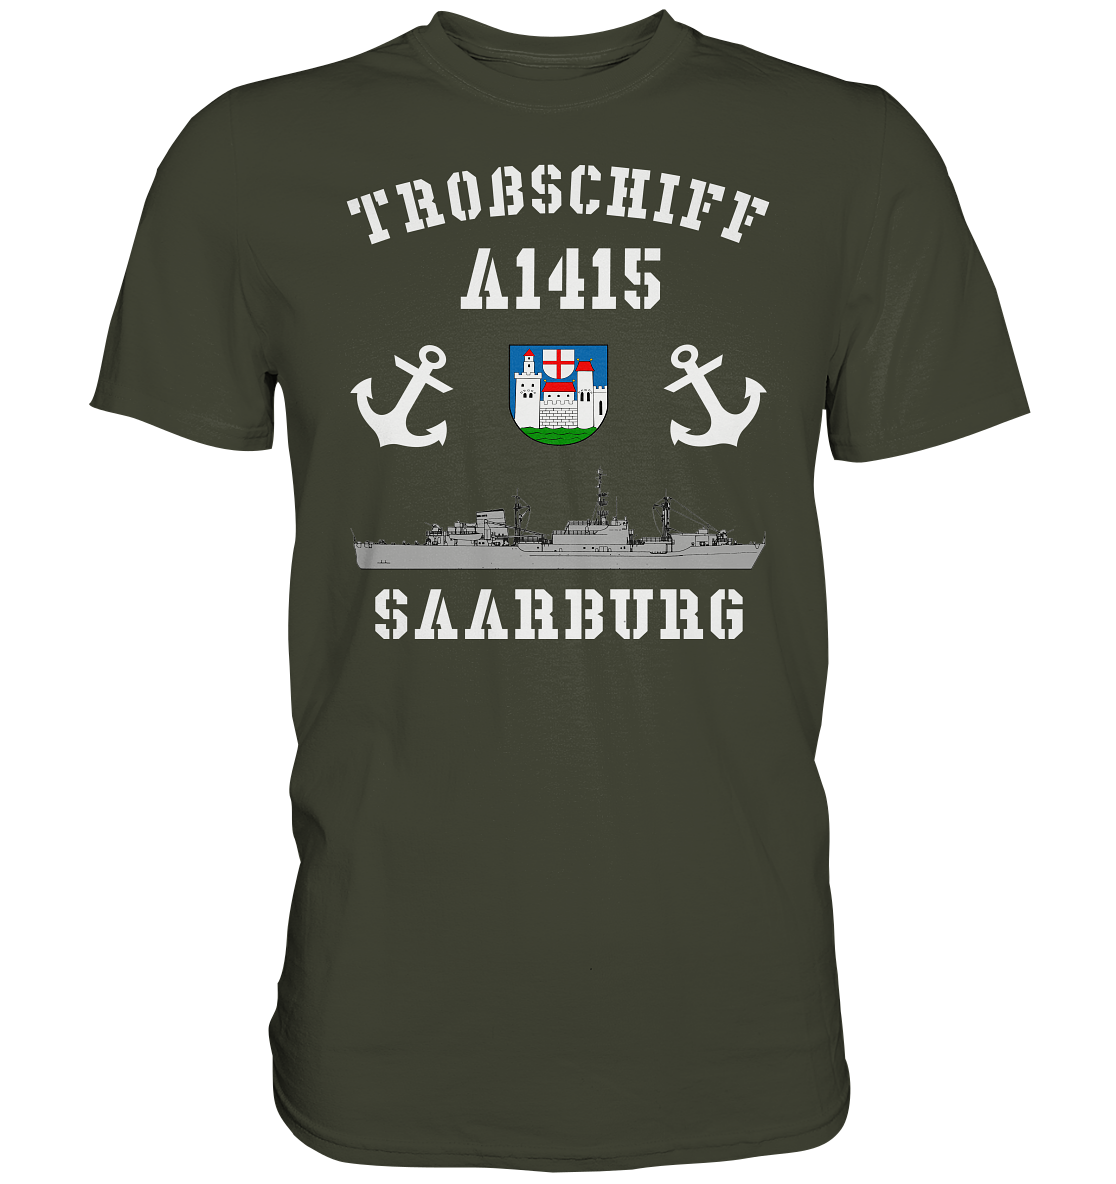 Troßschiff A1415 SAARBURG - Premium Shirt